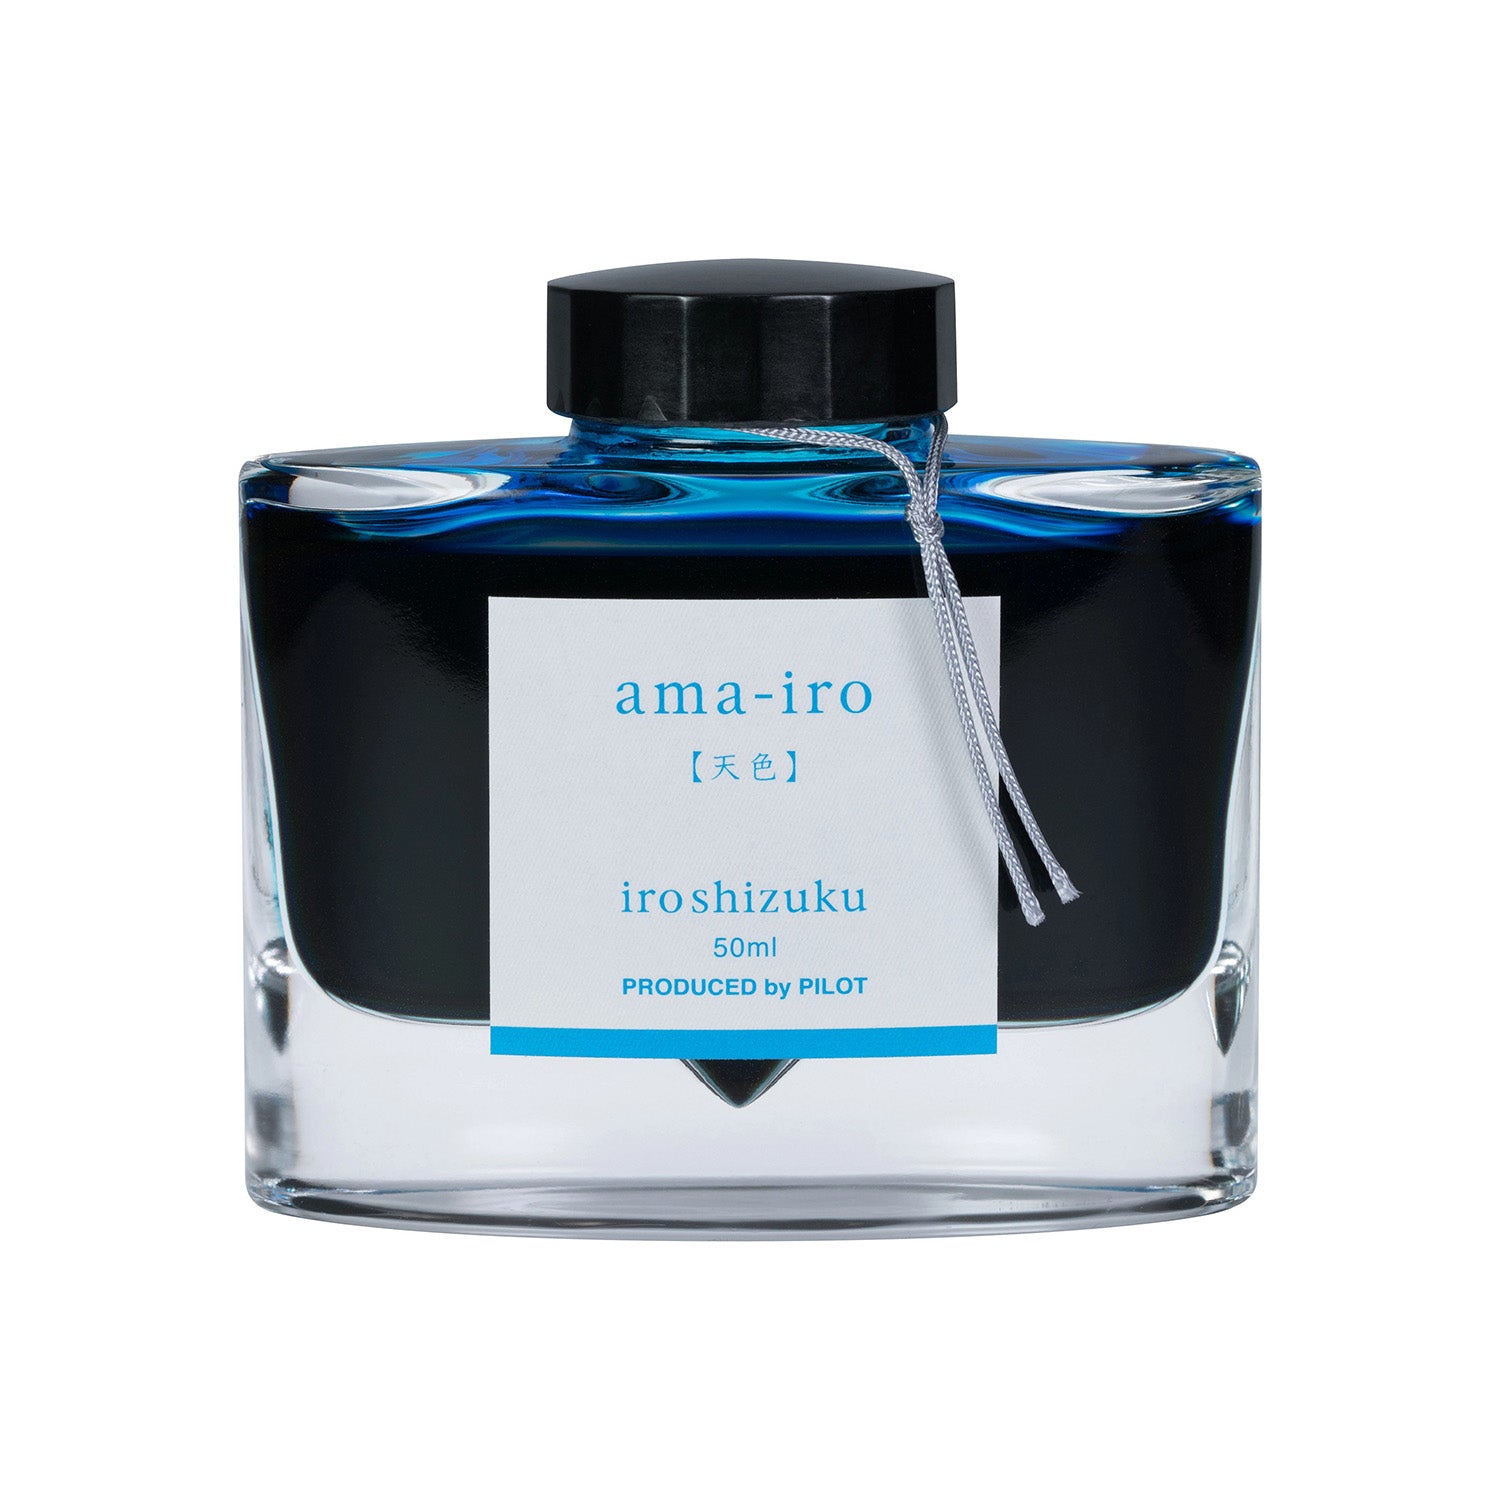 Pilot Iroshizuku Fountain Pen Ink - Ama-iro (Sky Blue) - 50 ml Bottle